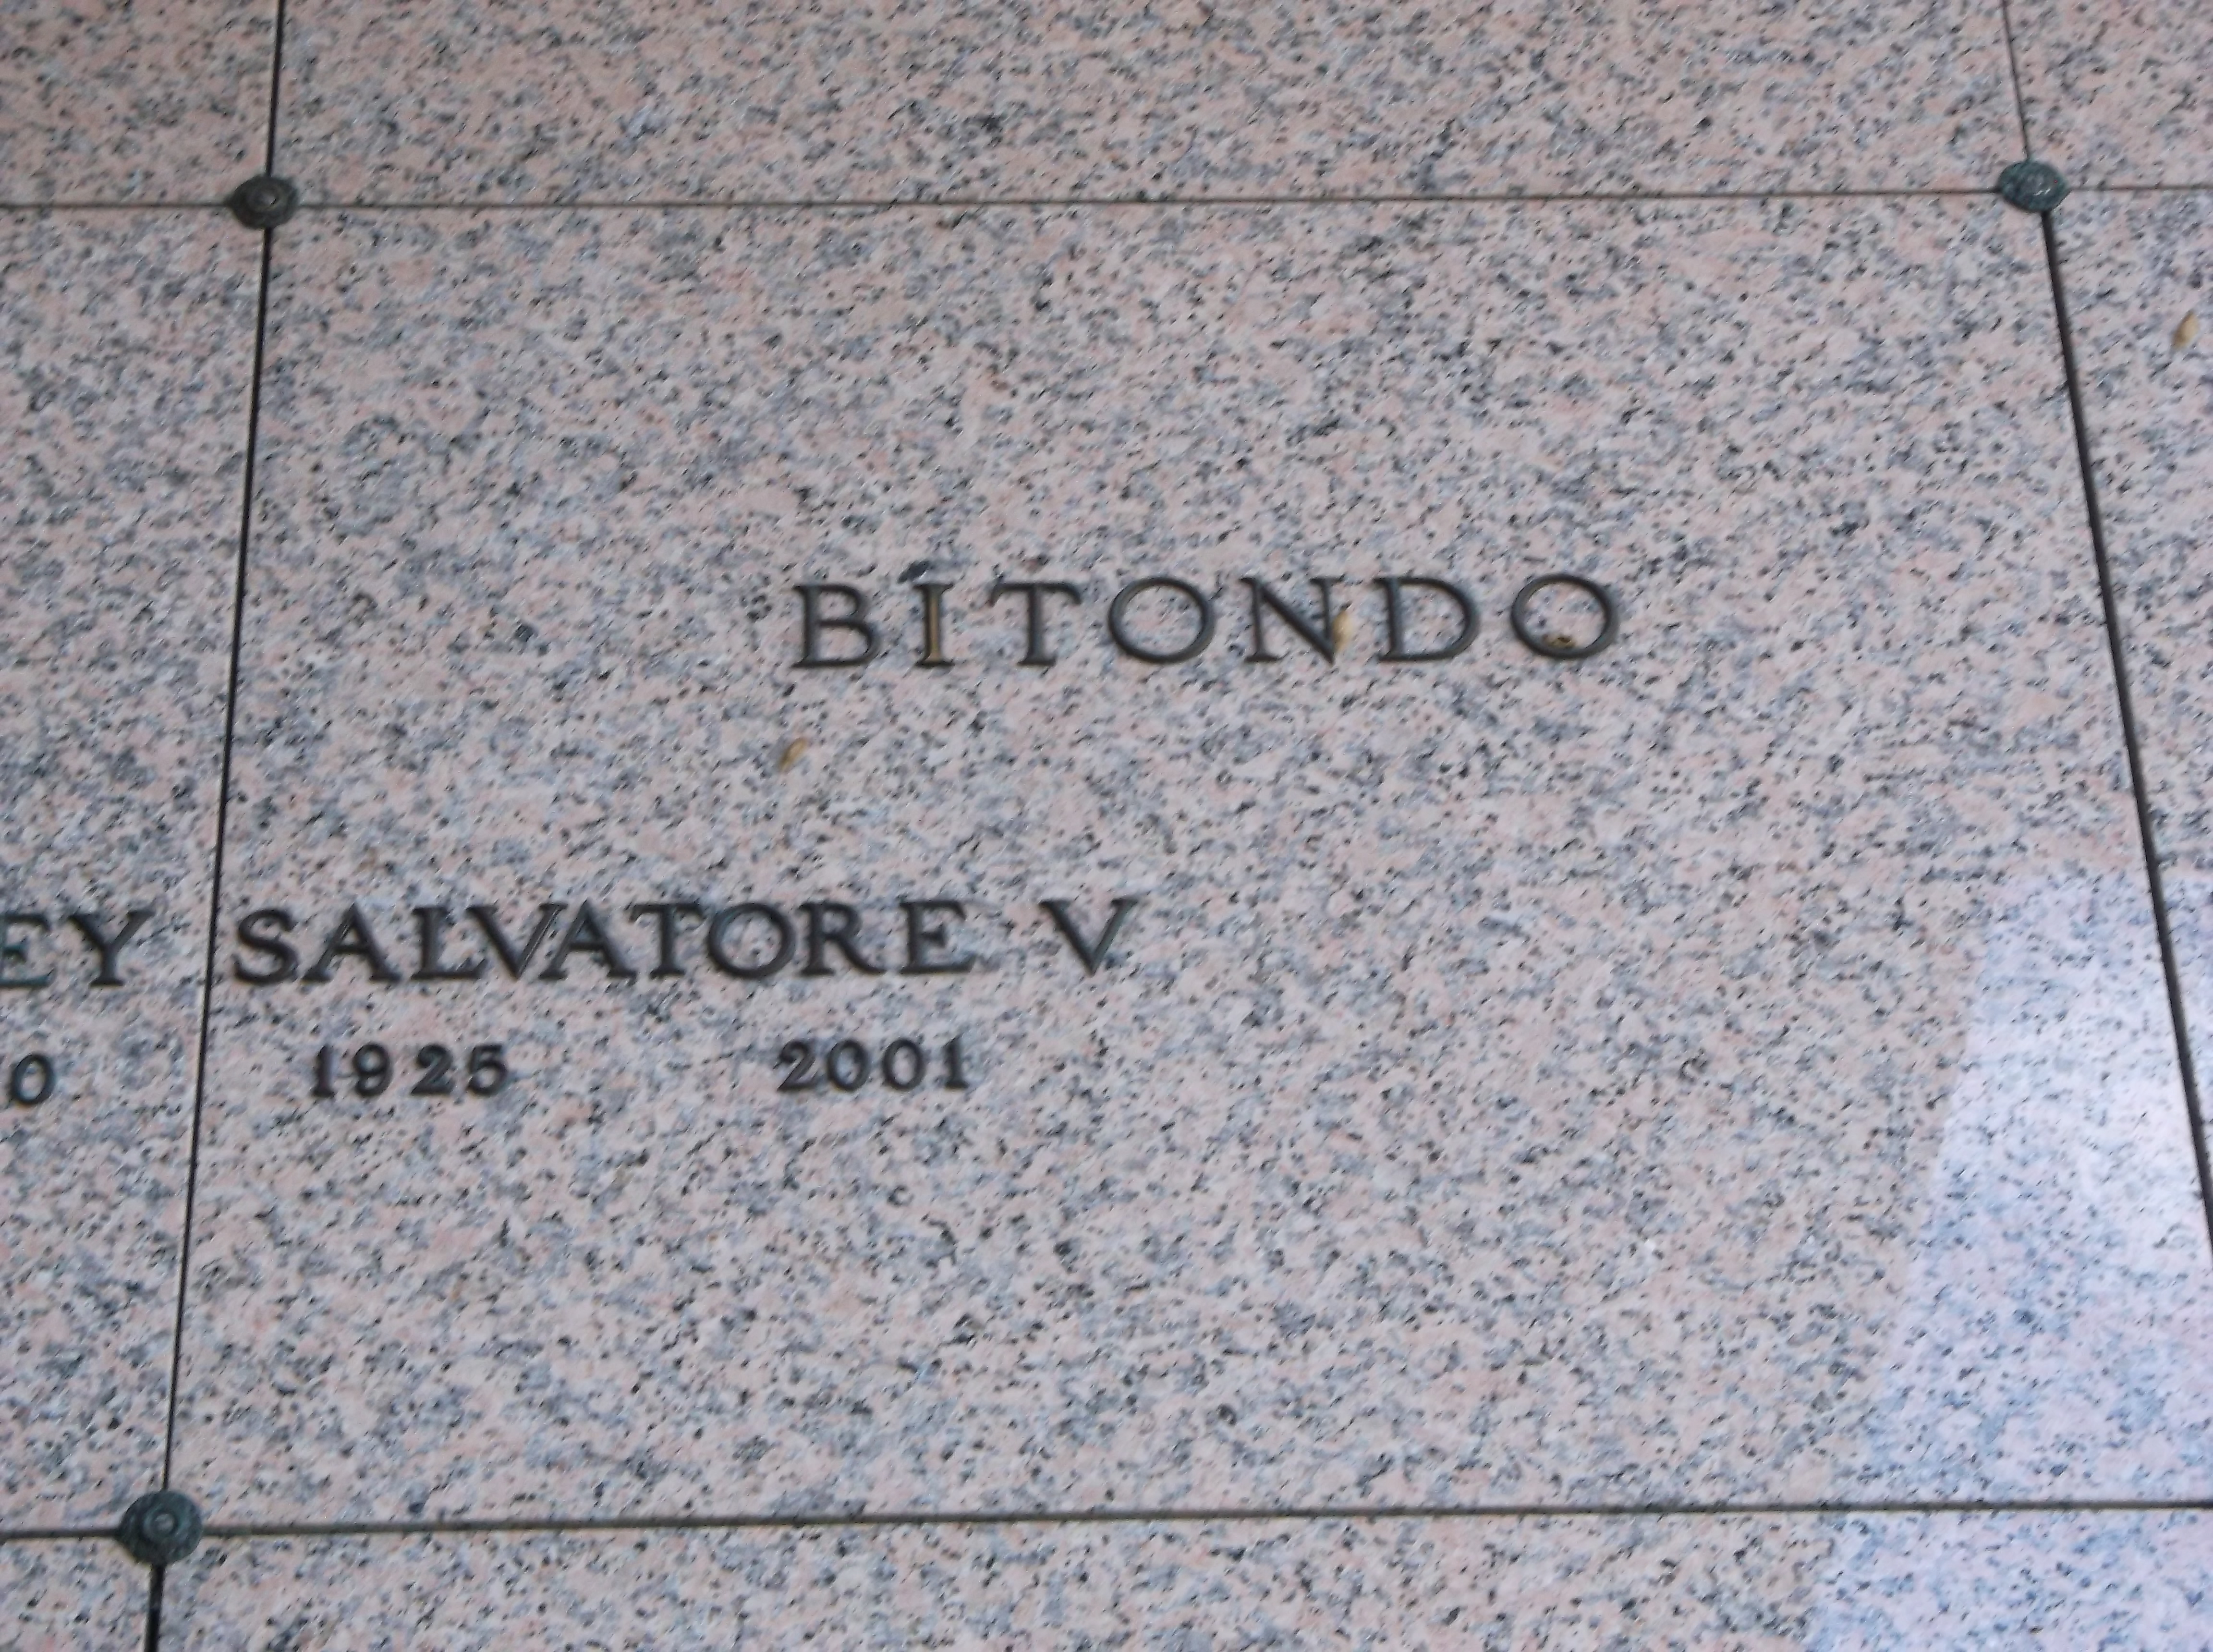 Salvatore V Bitondo